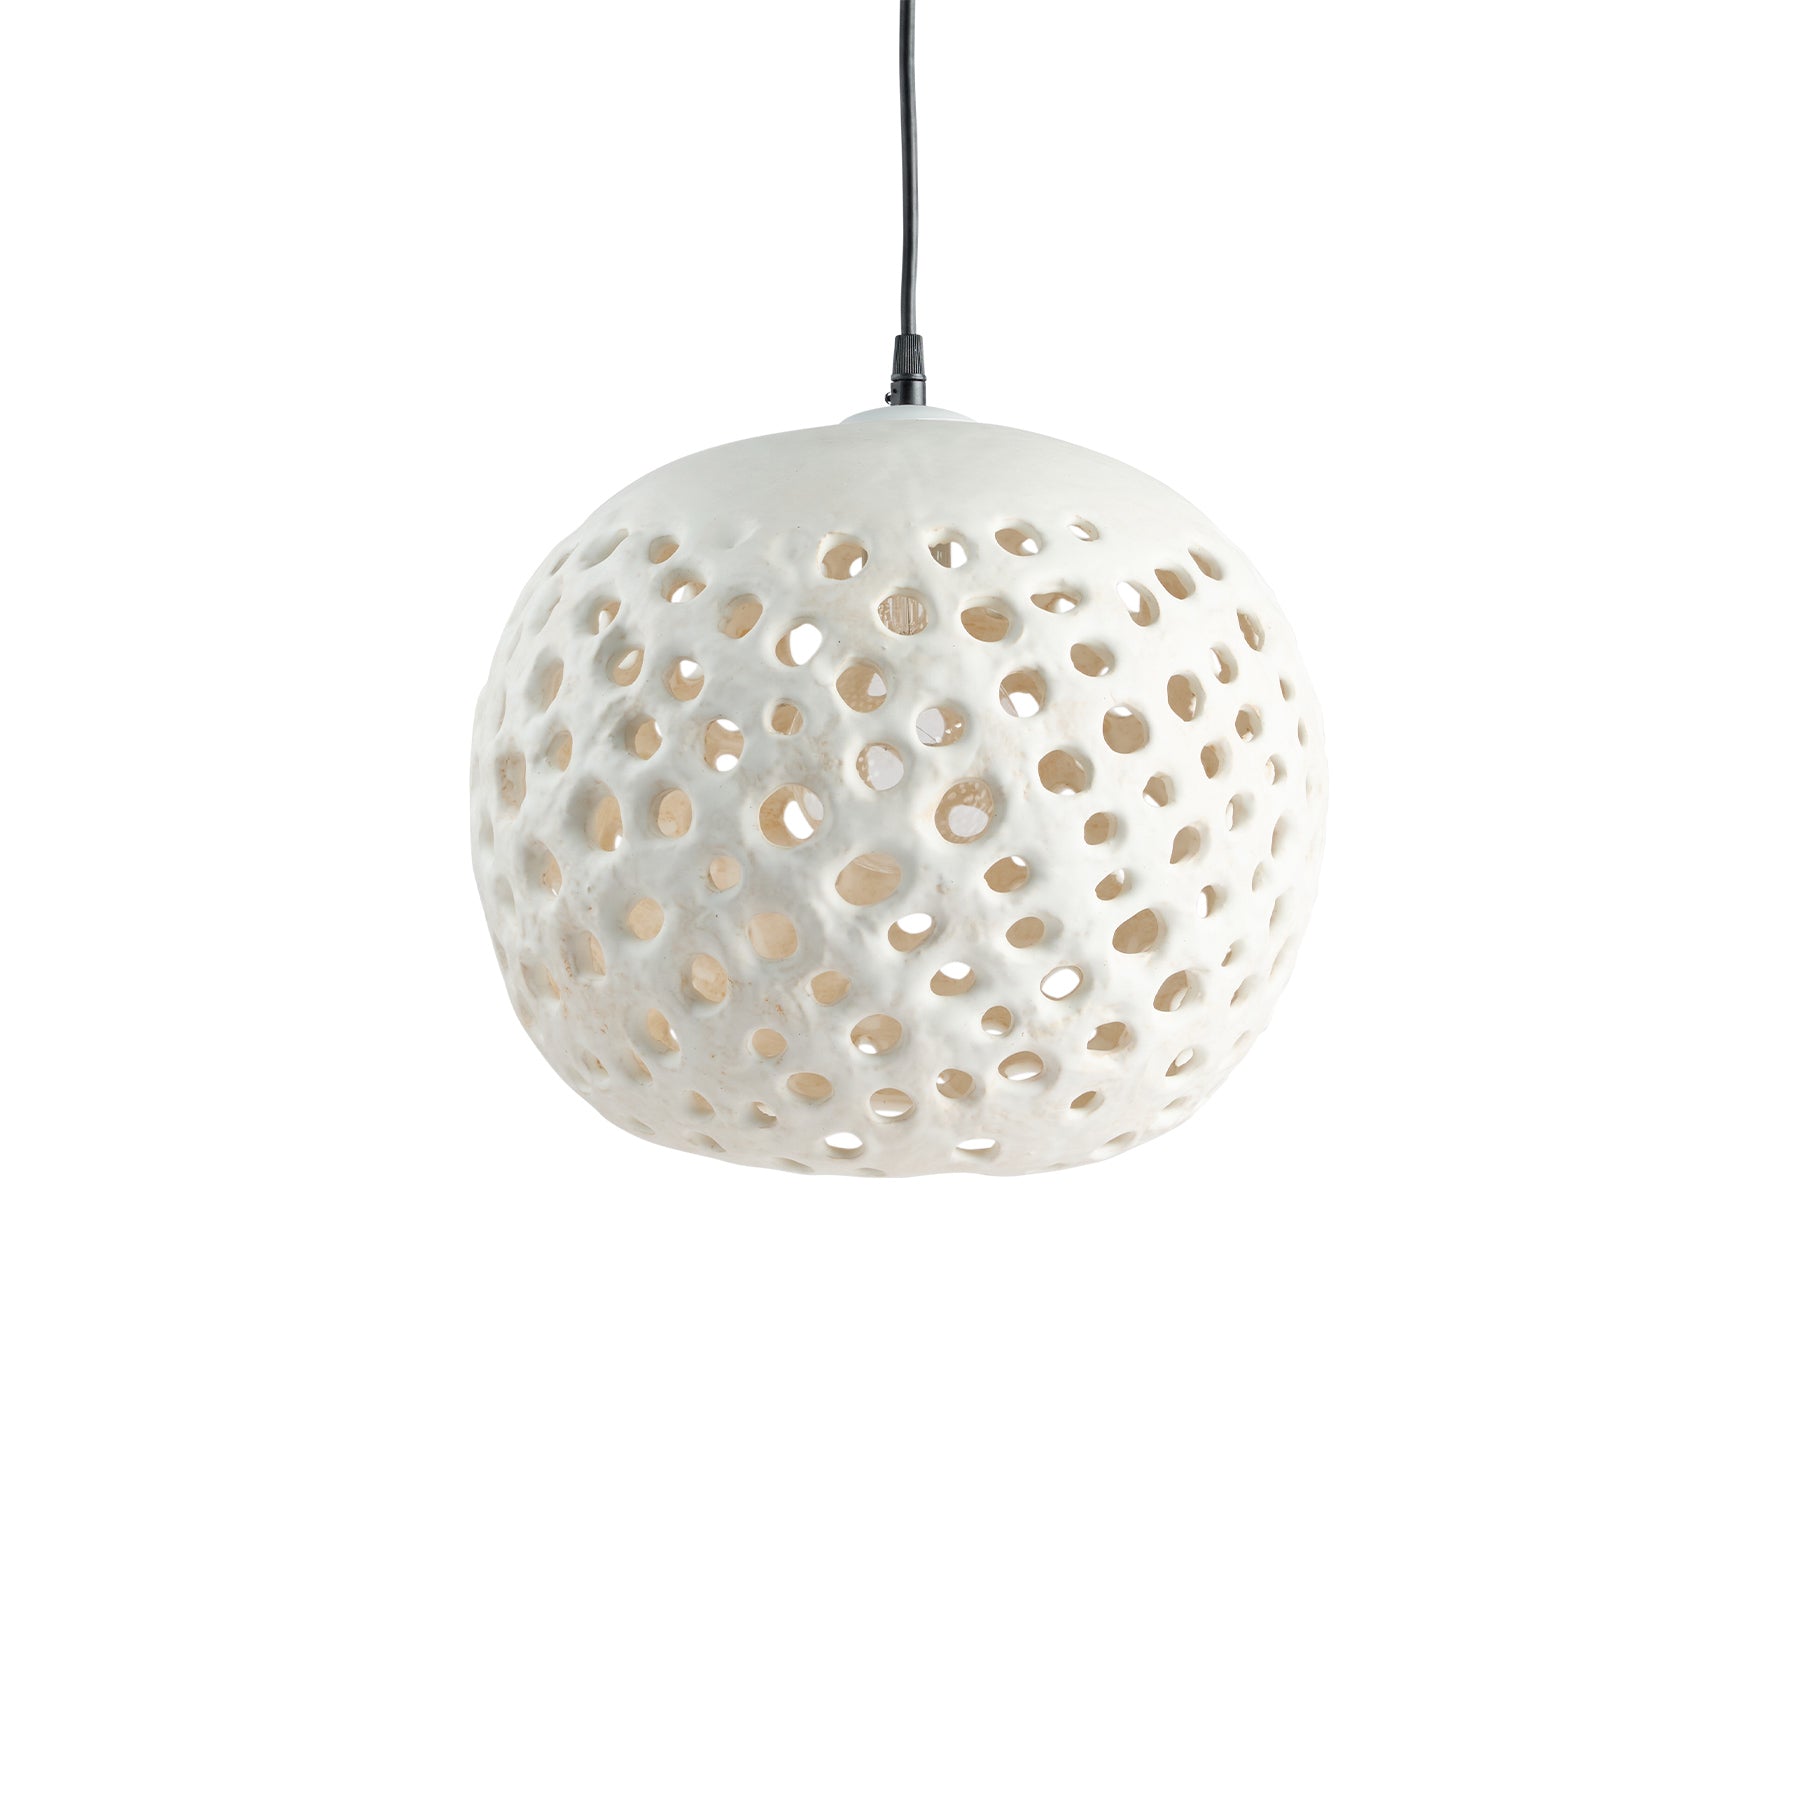 14" Ceramic Hanging Lantern in White Zoom Image 1